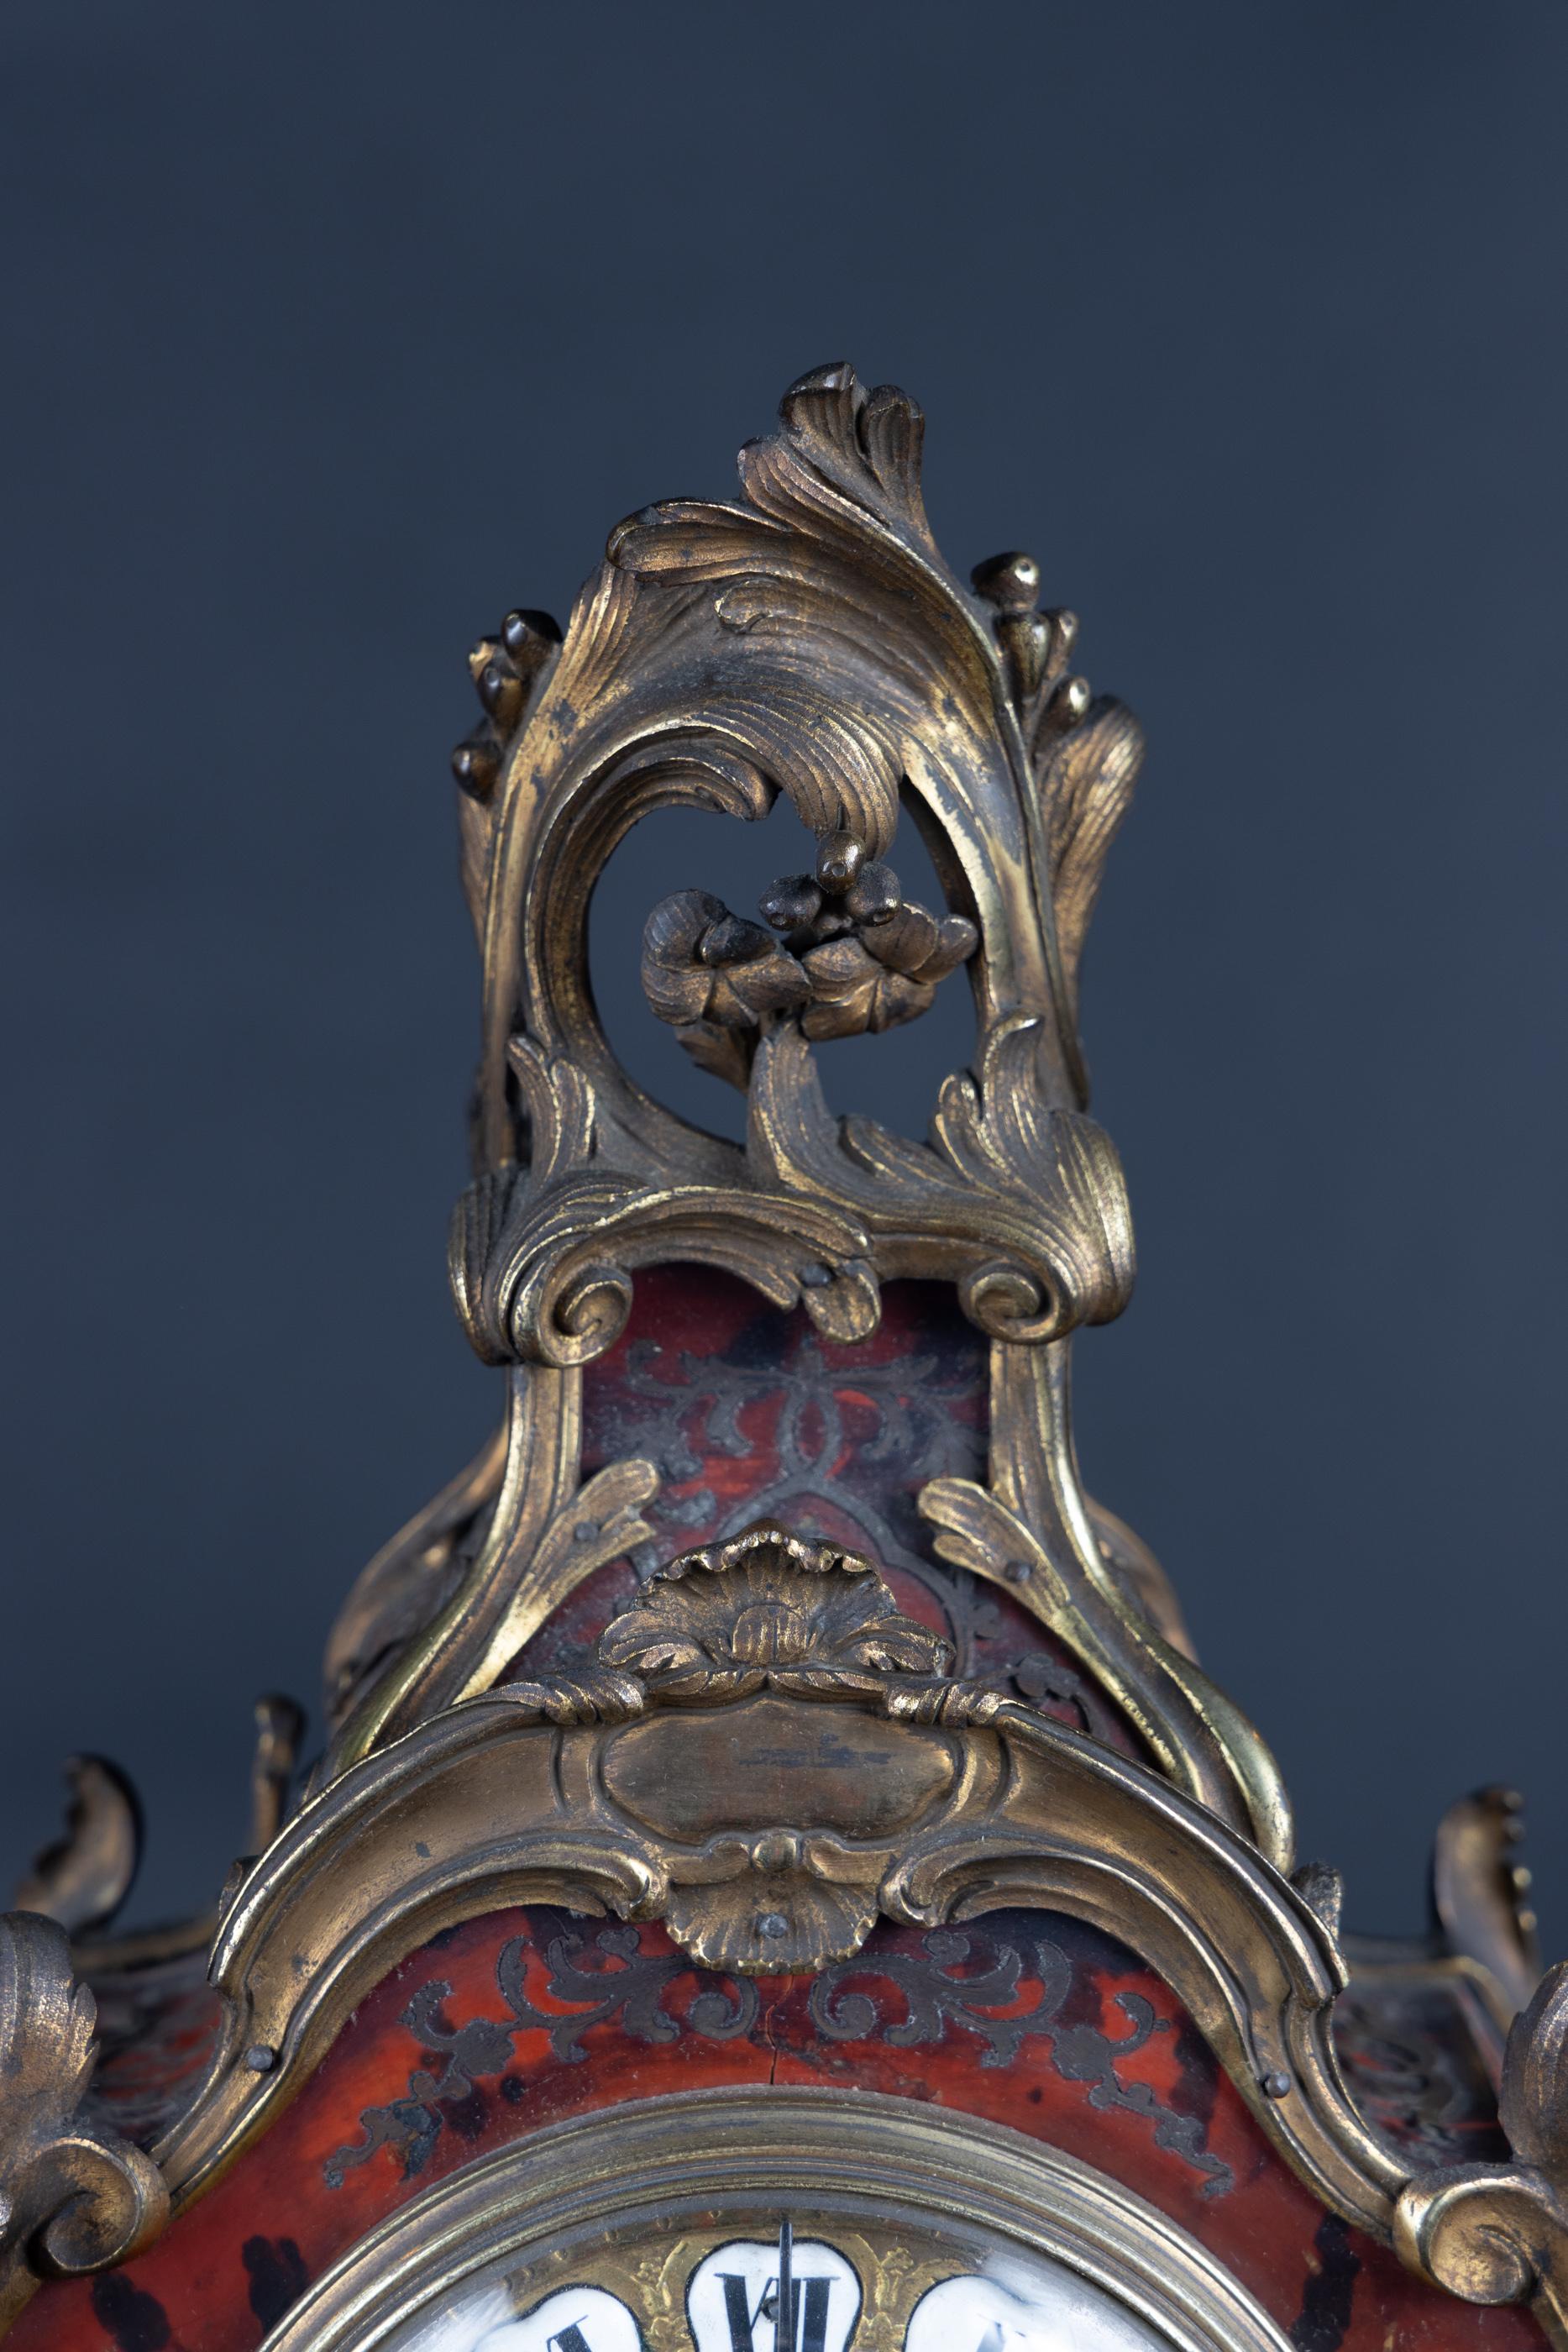 Pendule Boulle du XVIIIe siècle sur socle Boulle. La pendule Louis XV a des montures en bronze, avec des chiffres romains émaillés pour chaque heure.  Le pendule est visible à travers une vitre située sous le cadran.  De chaque côté, il y a un